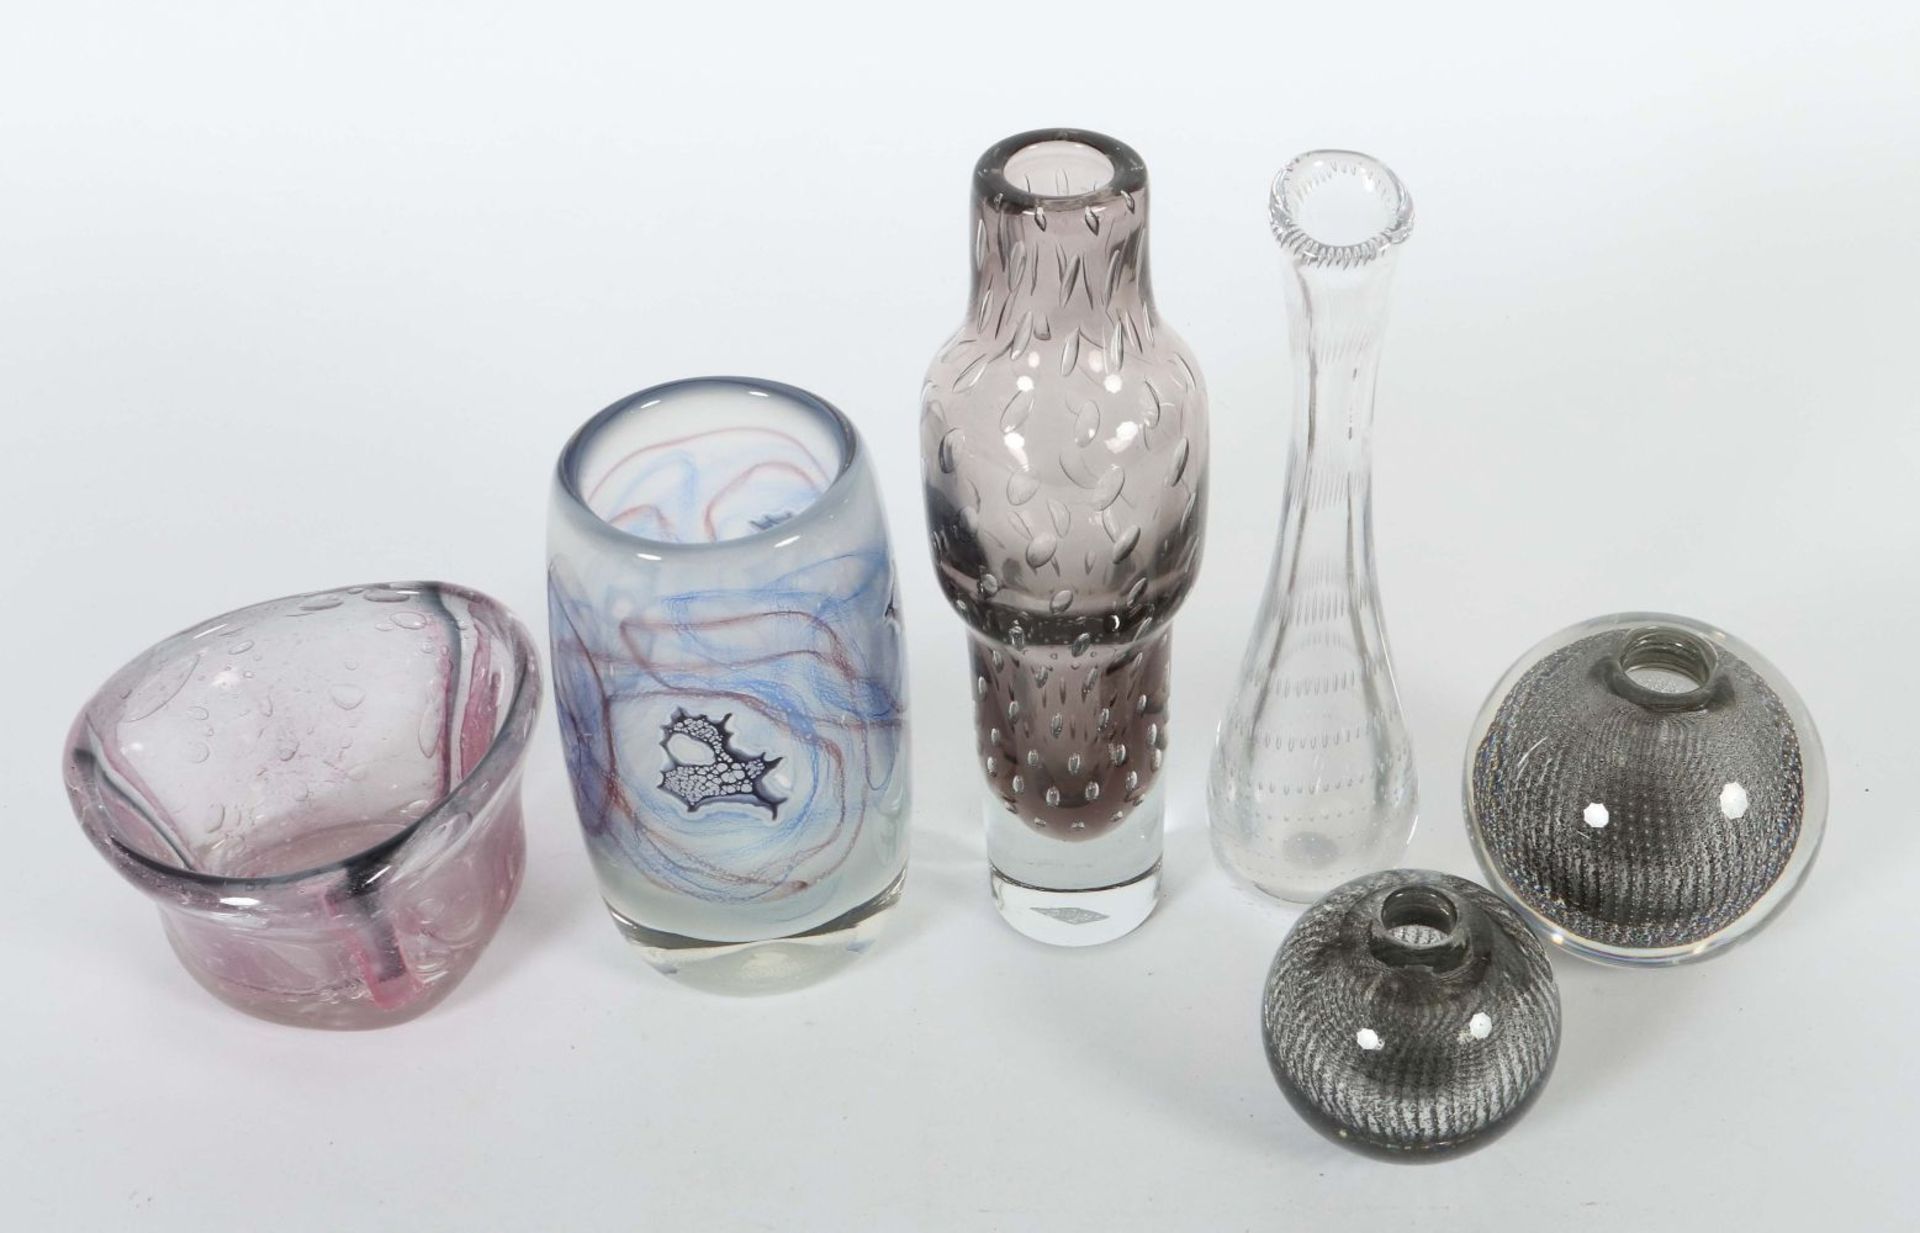 Eine Schale und 5 Vasen 4x wohl WMF, - Image 2 of 2